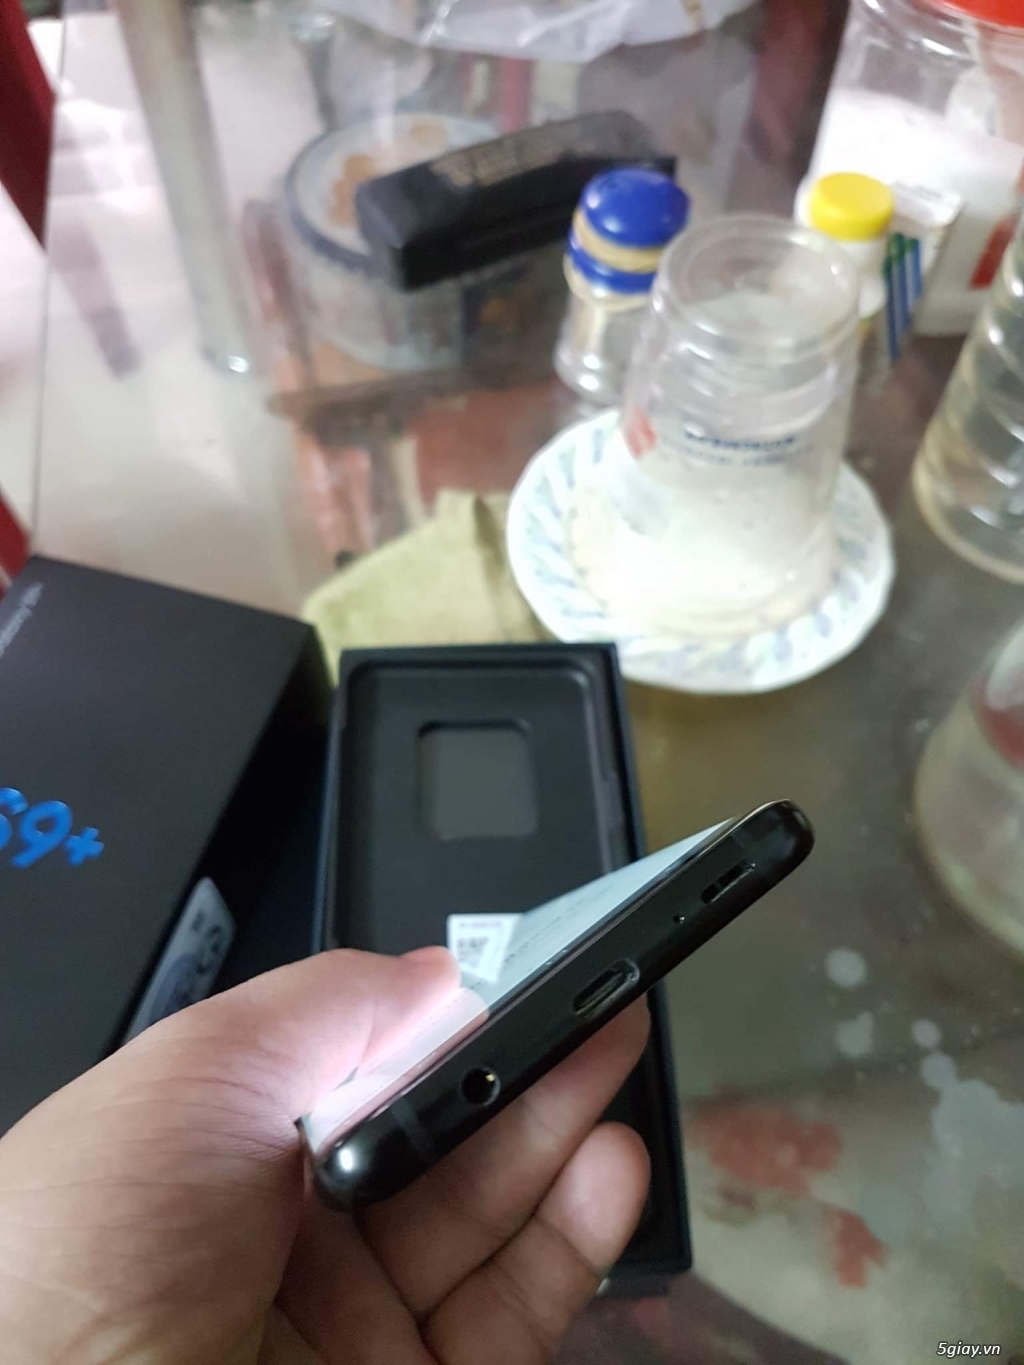 S9 plus đen 128gb 2 sim, Samsung Việt Nam bảo hành 5/2019 - 2